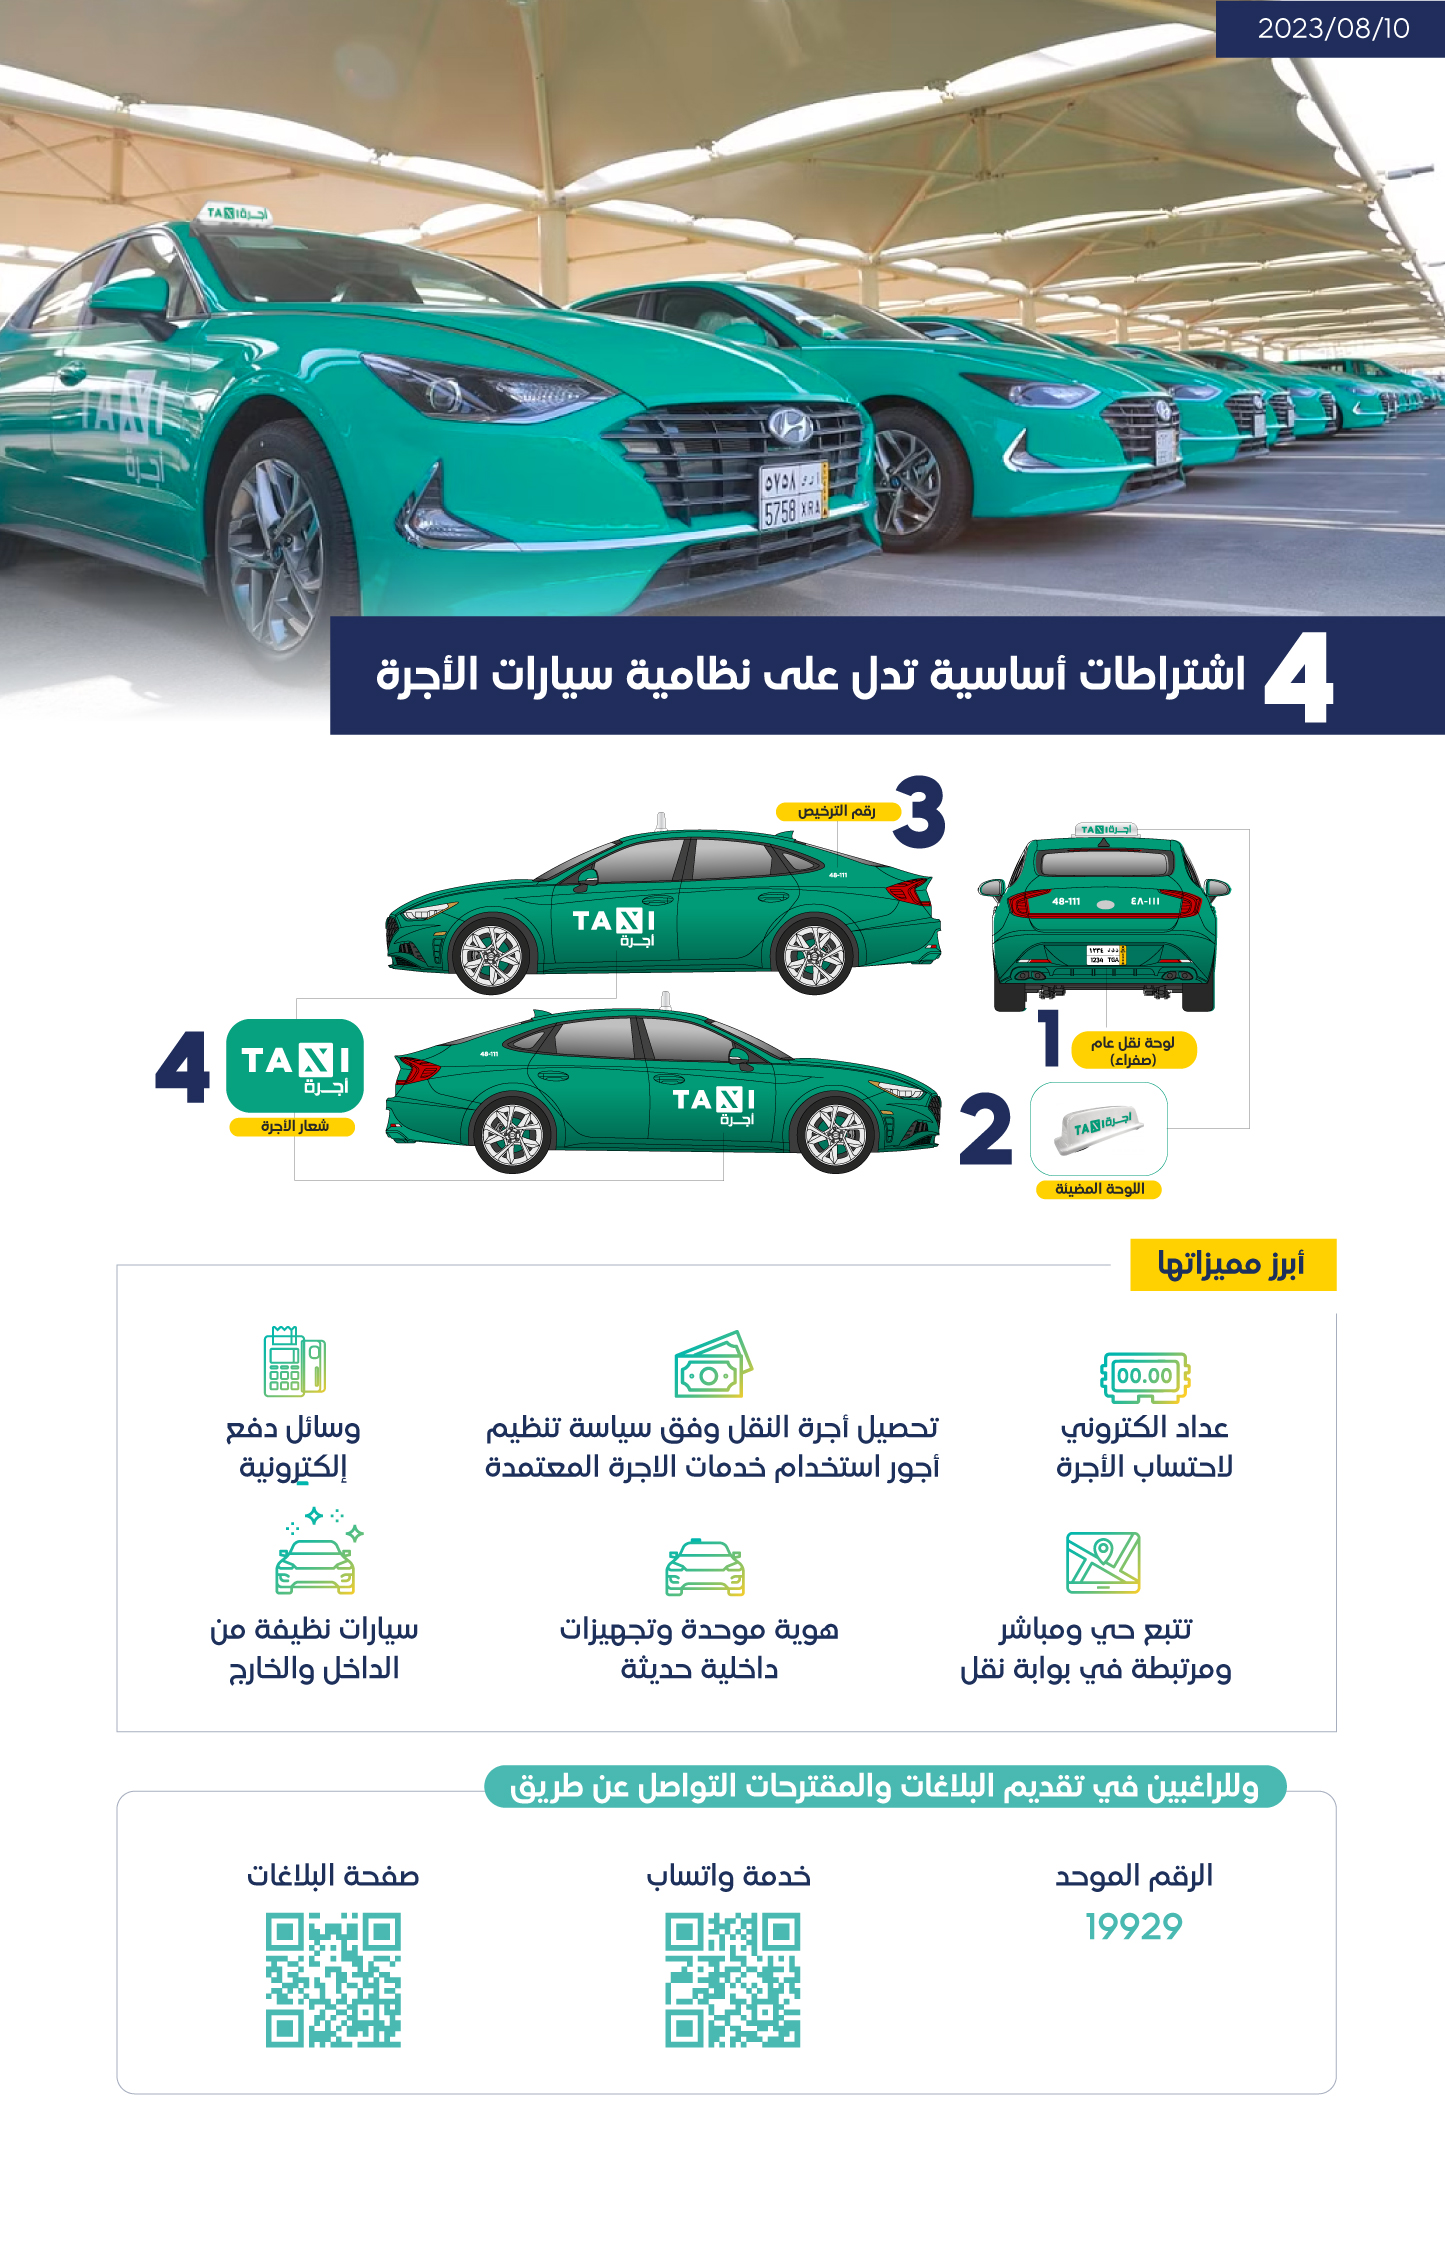 "النقل" تحدد 4 اشتراطات أساسية لسيارات الأجرة النظامية 3